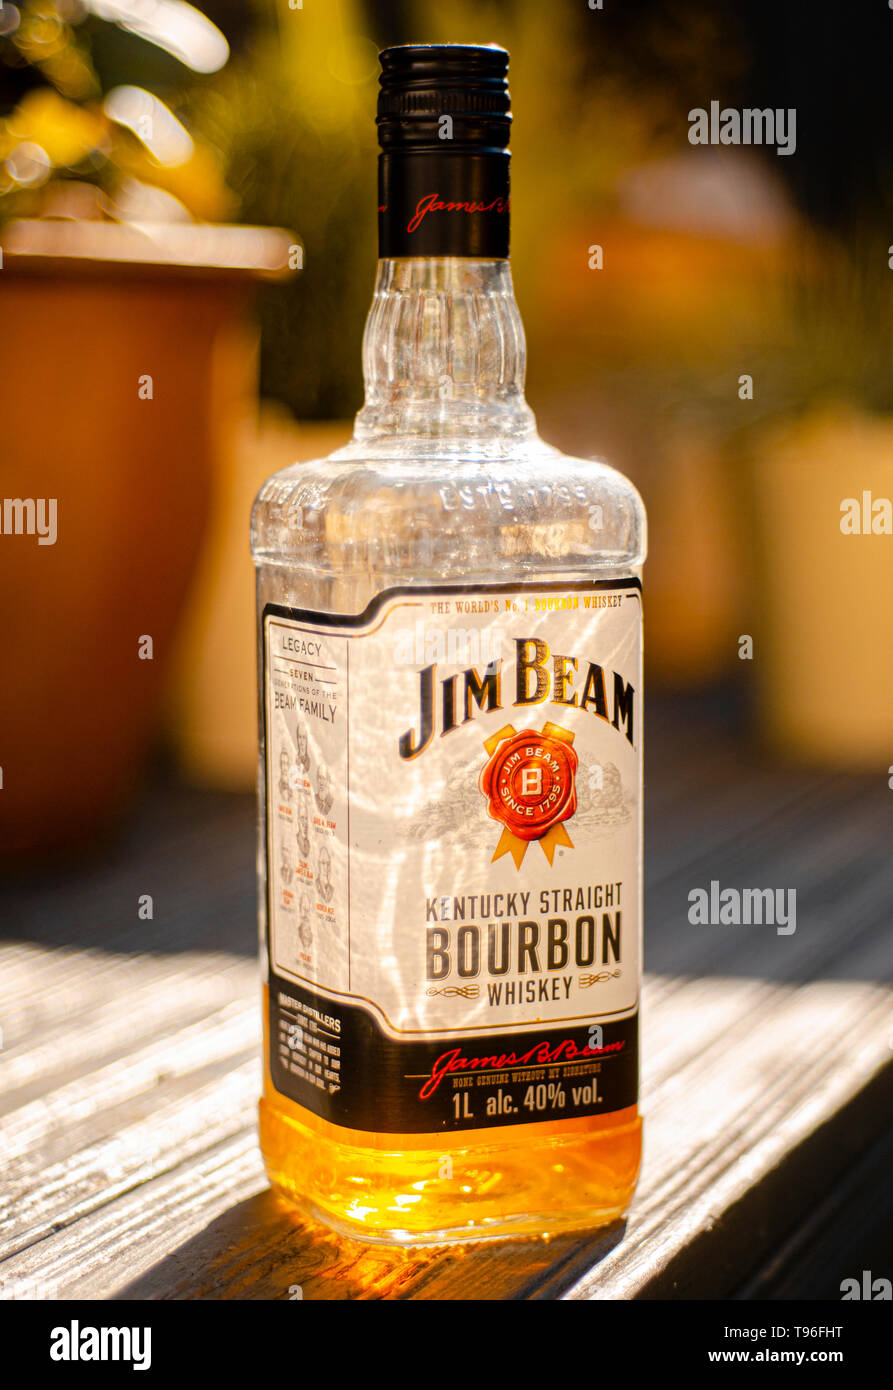 Ouvre bouteille de whisky Bourbon Jim Beam, Jim Beam est faite par Beam Suntory au Kentucky, aux États-Unis depuis 1795. Banque D'Images